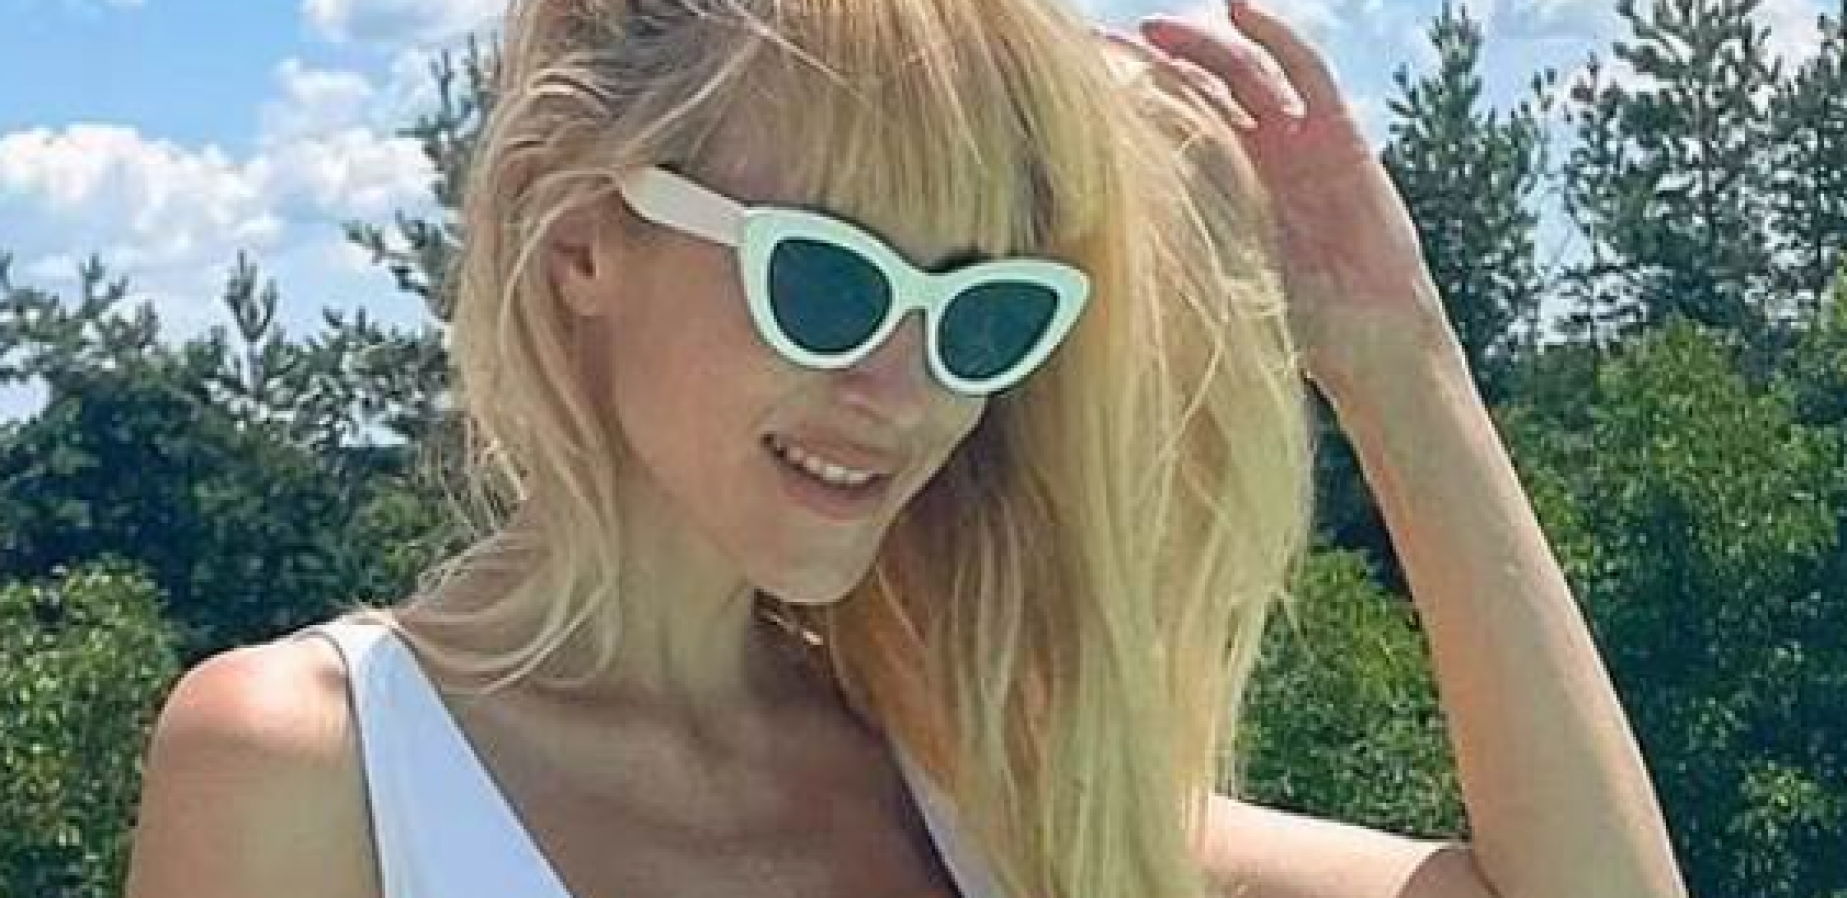 NIKAD VRELIJE IZDANJE Poznata srpska glumica Iva Štrljić izgrmela u kupaćem, komentari samo pljušte (FOTO)